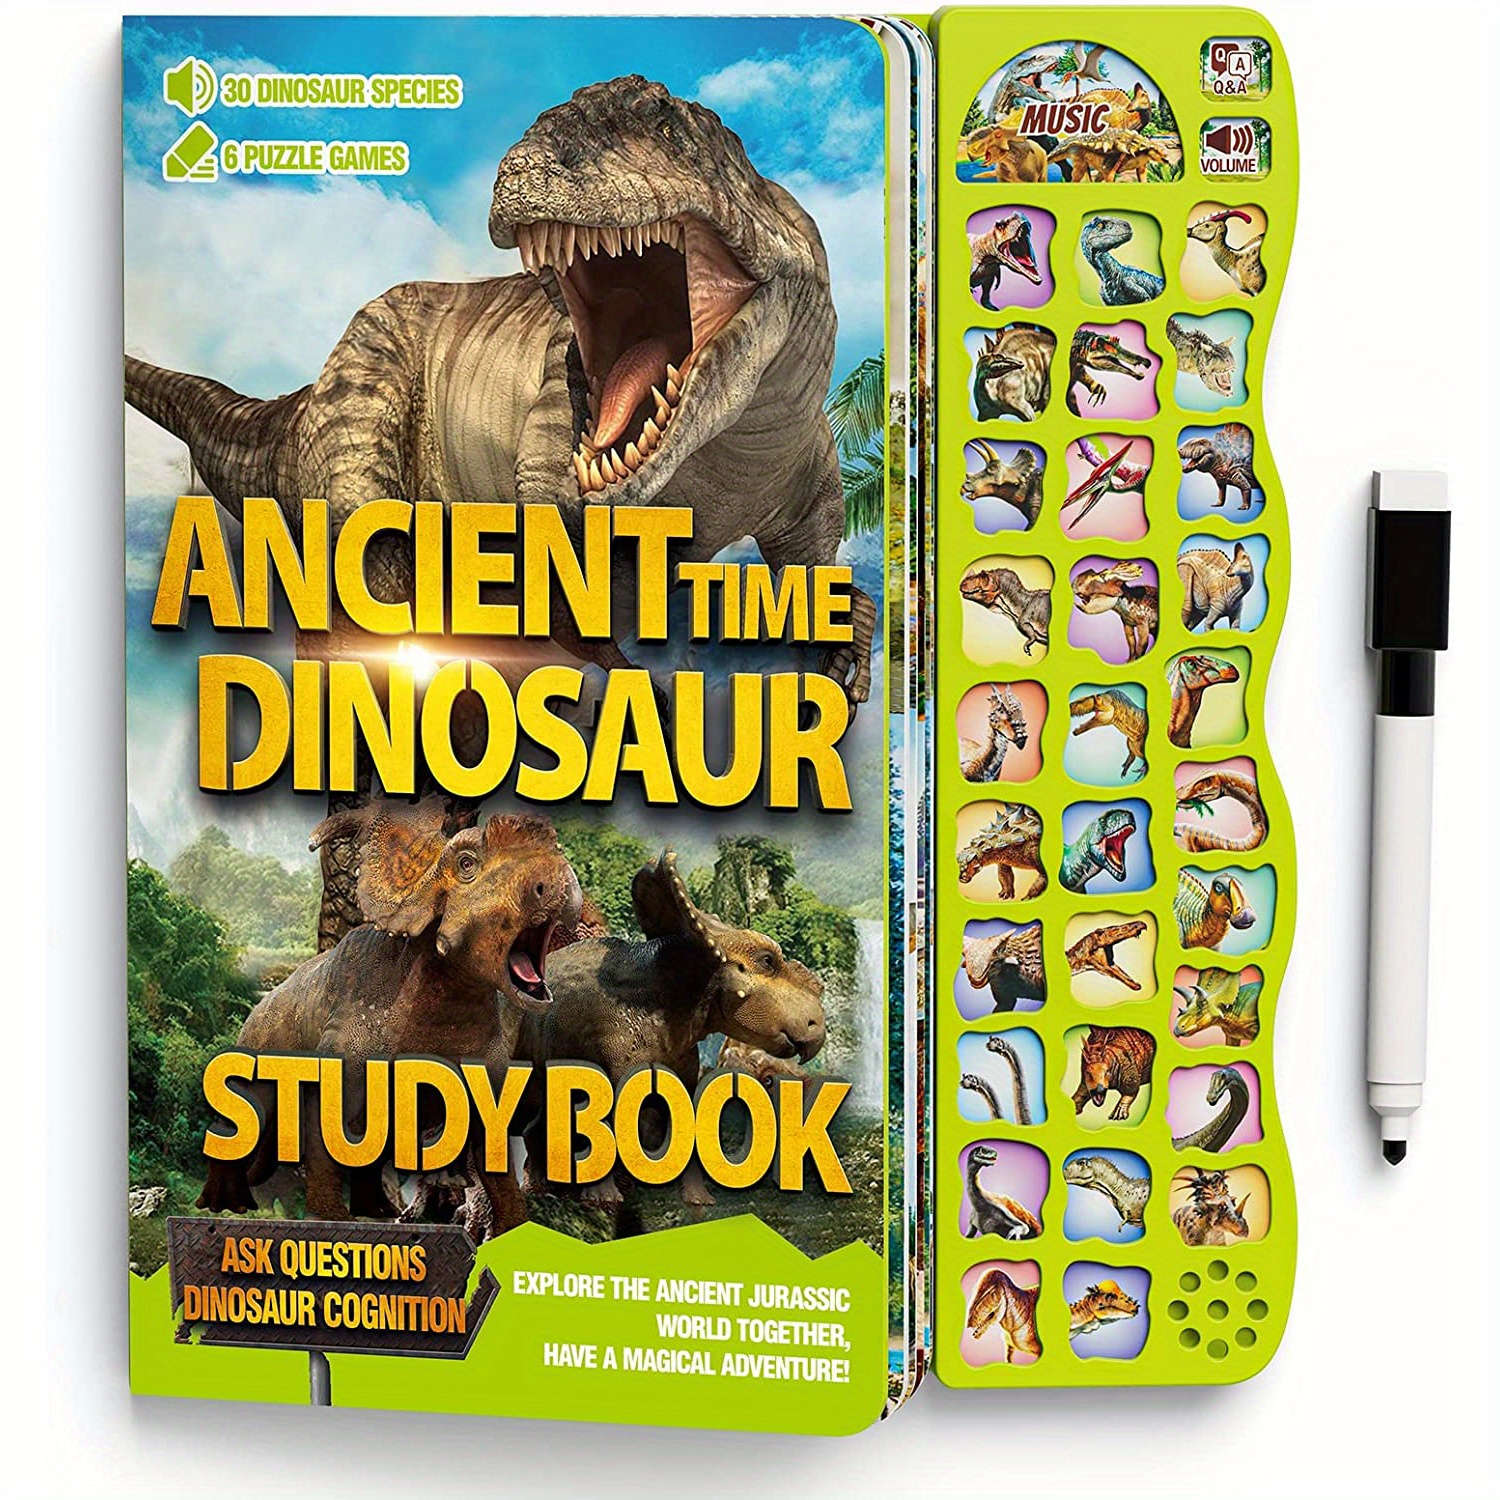 Cherche et Trouve Géant : Animaux, Dinosaures et Fantaisie ! Livre enfant  4-8 ans éducatif: Grand Livre de jeux et d'activités ludiques filles et